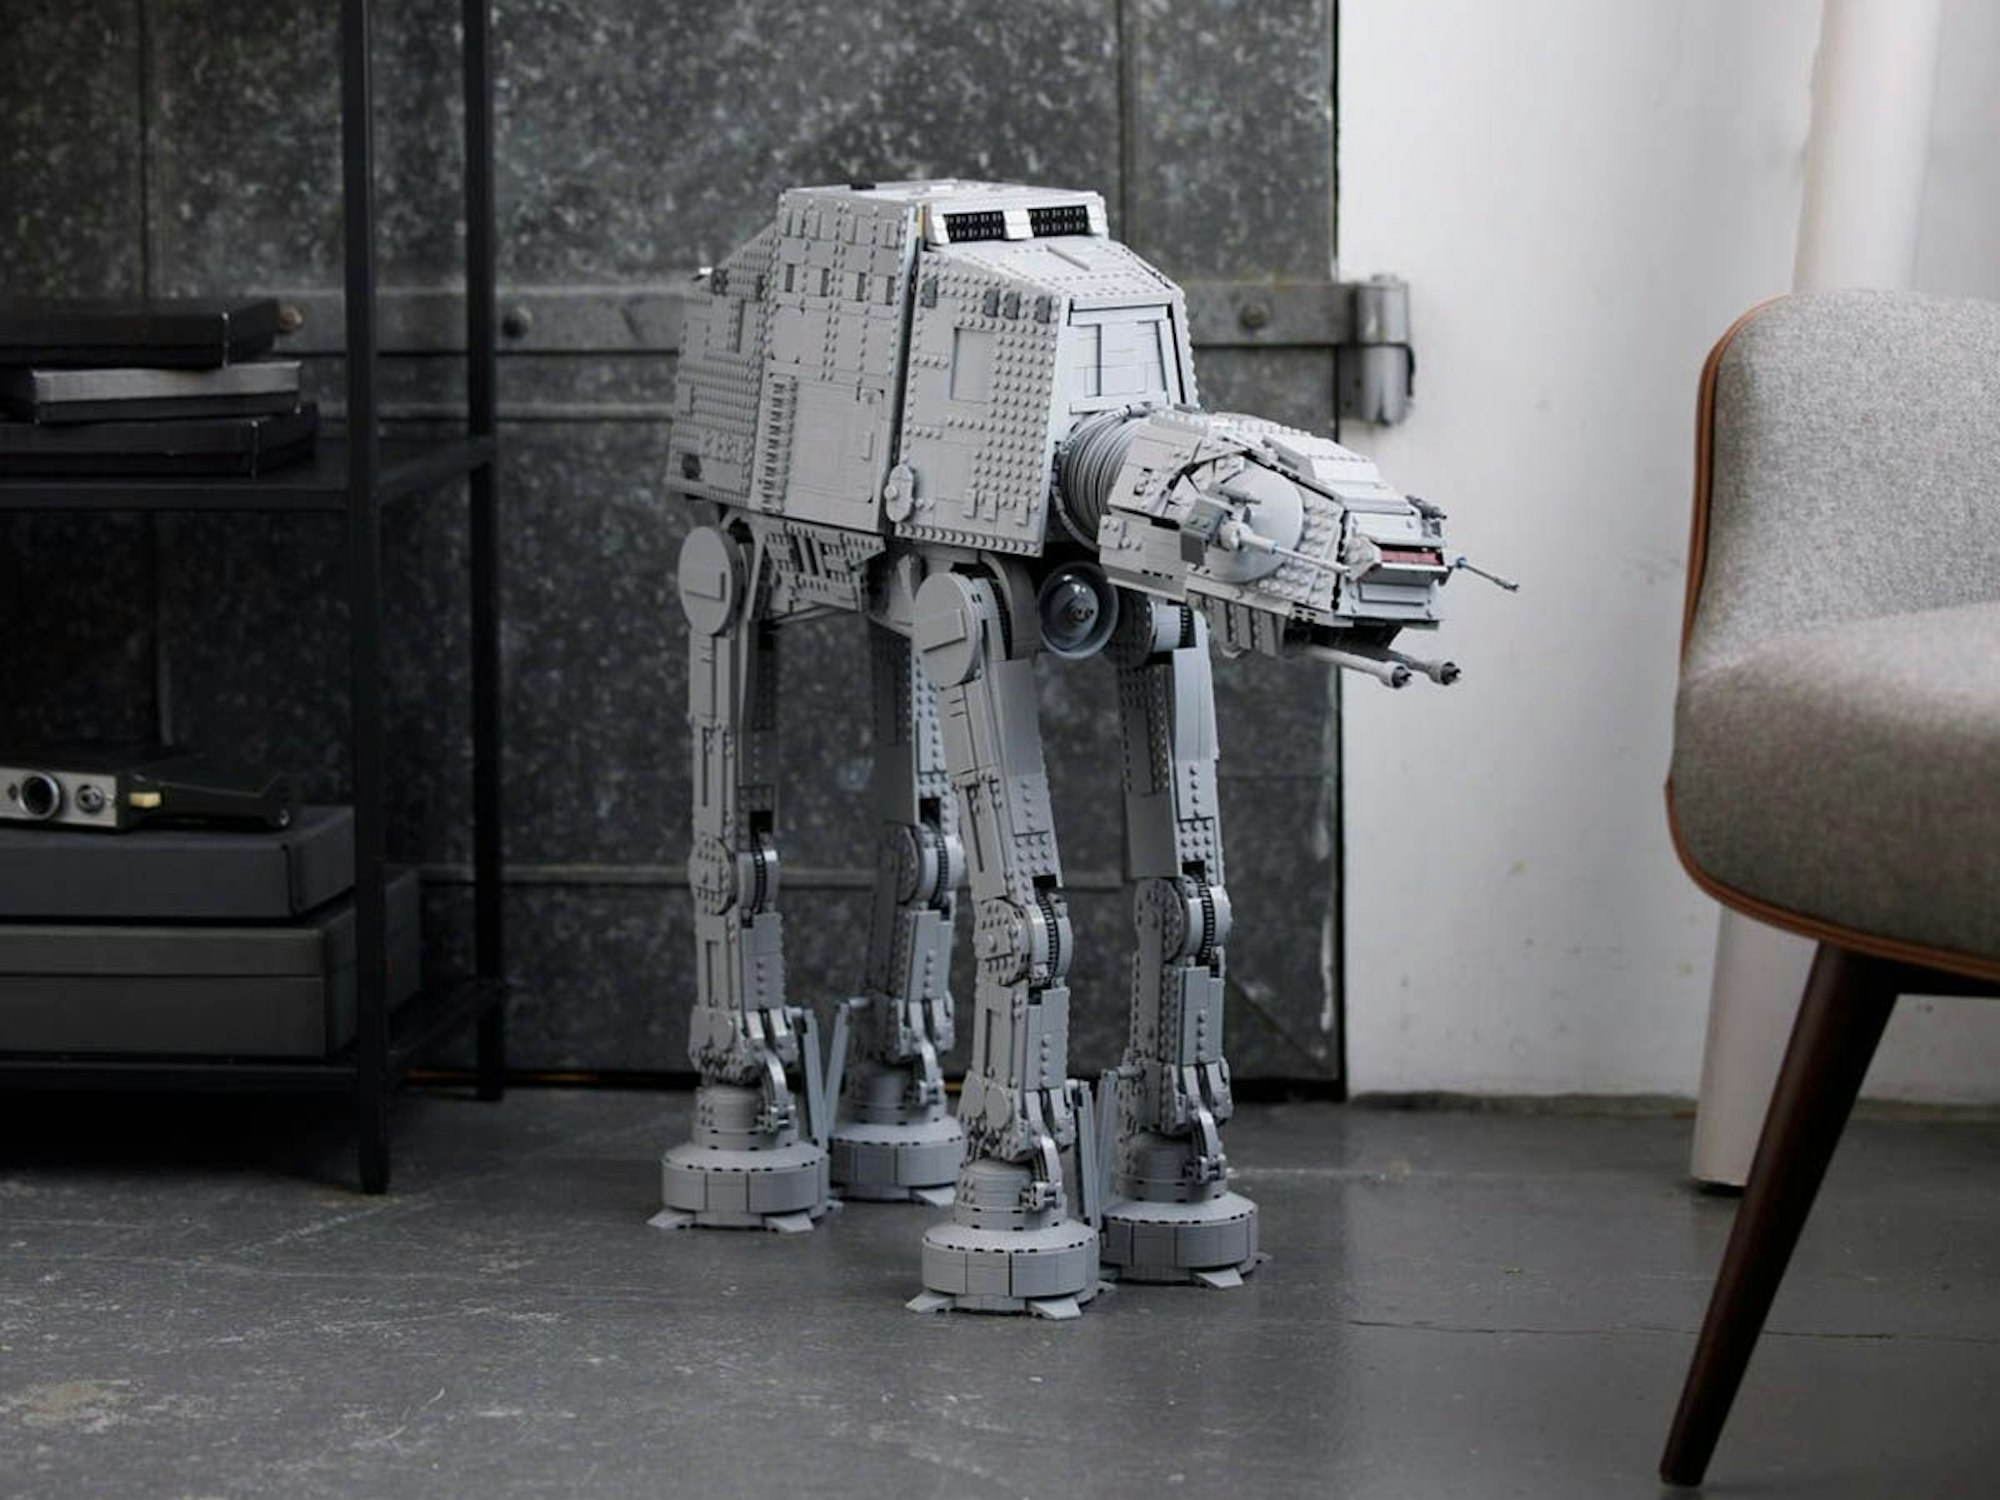 Das Modell  Lego Star Wars AT-AT steht auf dem Boden einer Wohnung.